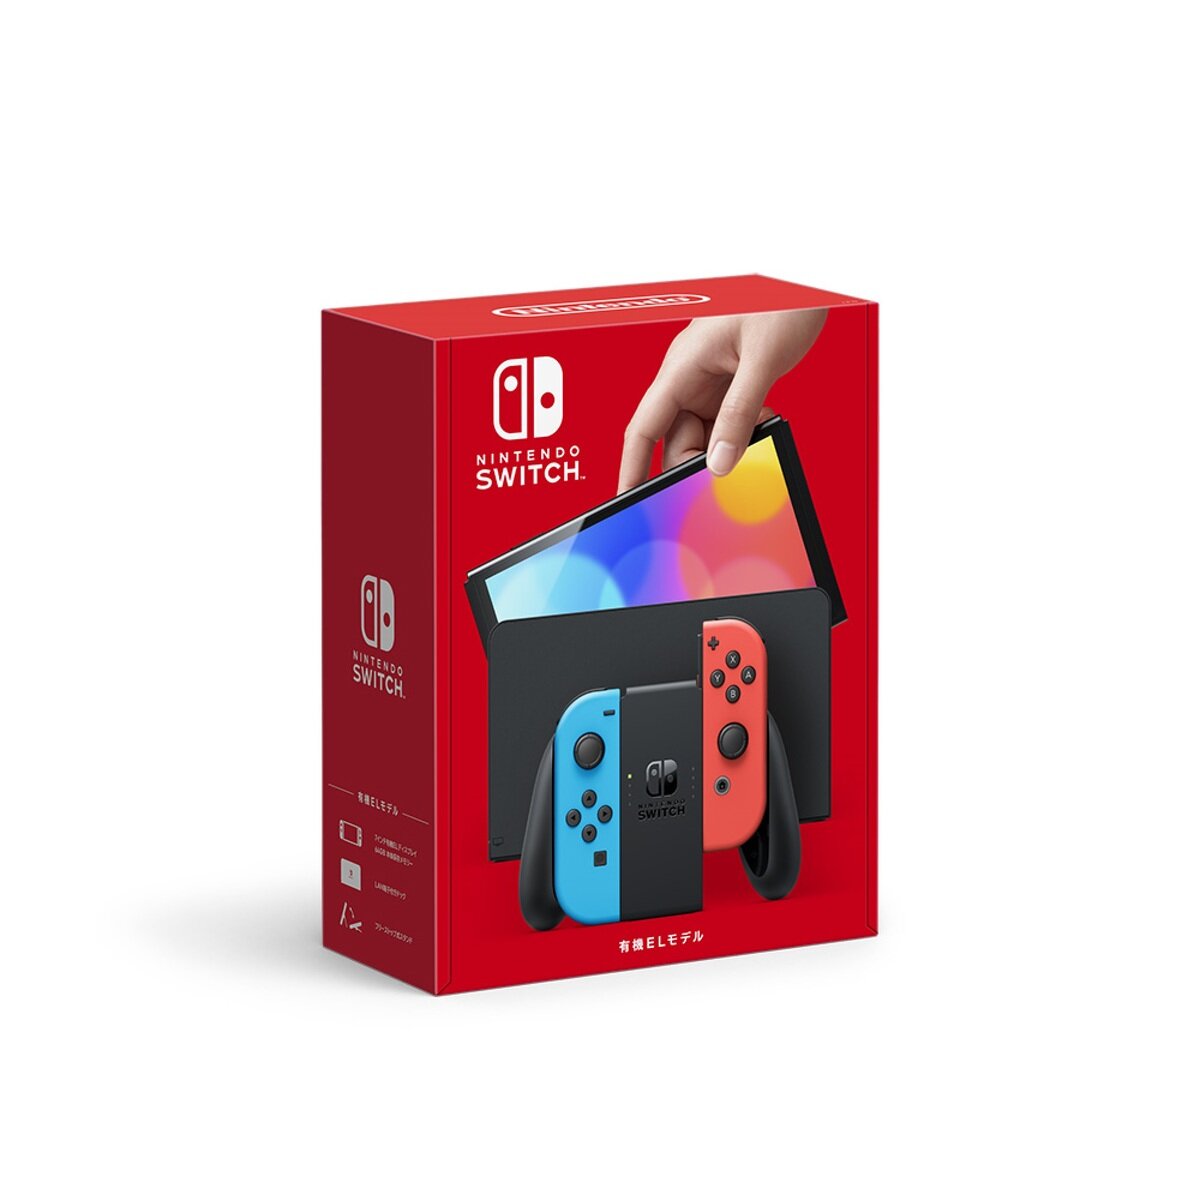 Nintendo Switch (有機ELモデル) ネオンブルー・ネオンレッド | Costco